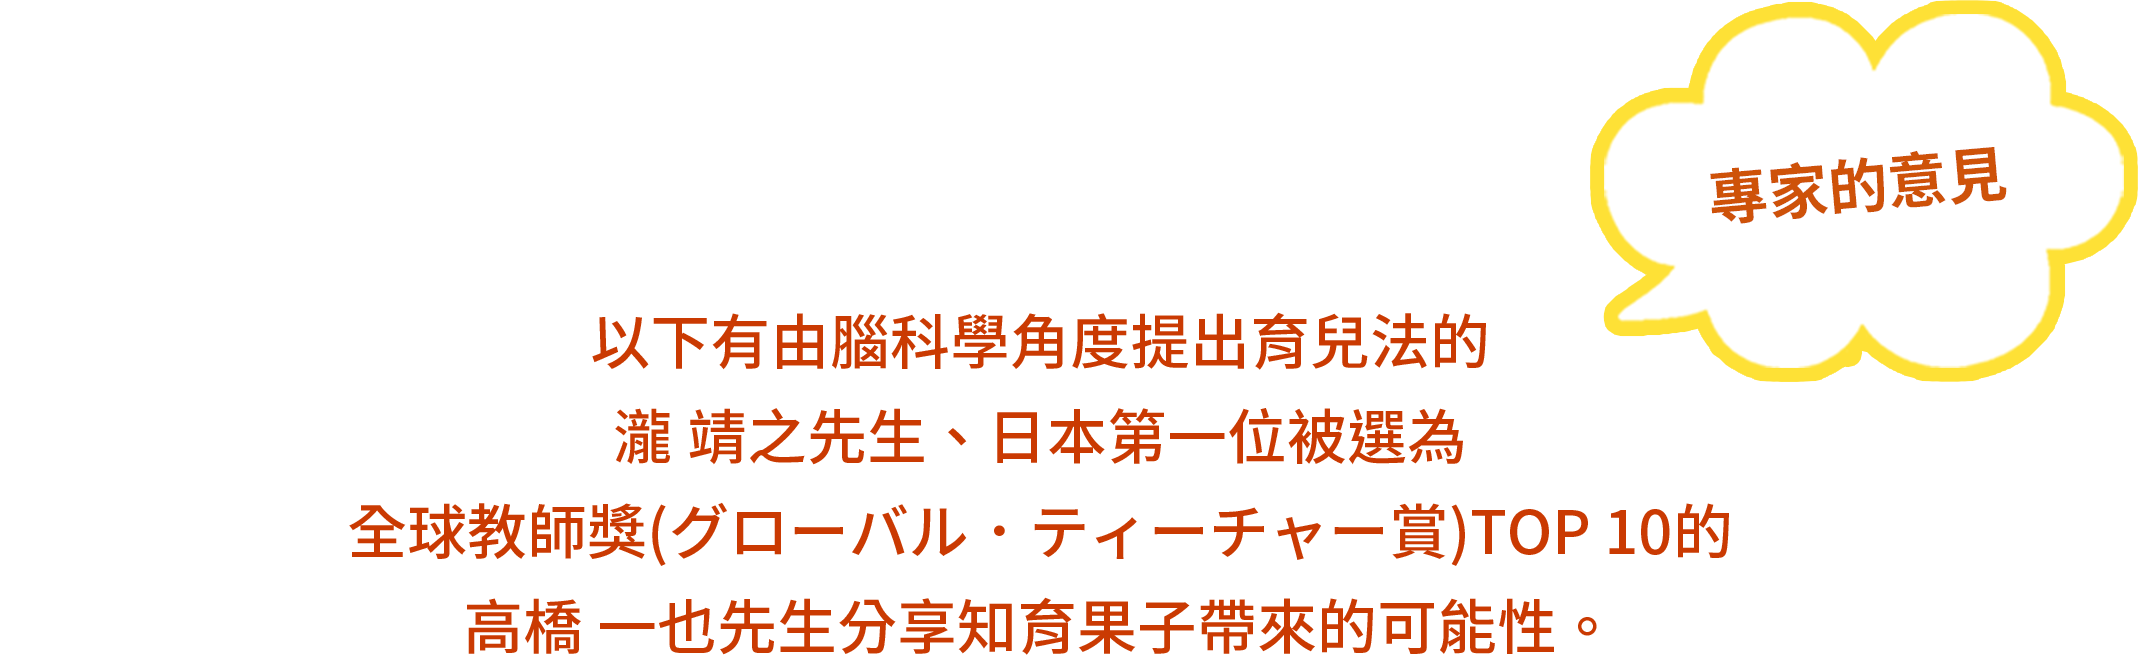 專家的意見 - 以下有由腦科學角度提出育兒法瀧 靖之先生、日本第一位被選為全球教師獎(グローバル．ティーチャー賞) TOP 10的高橋 一也先生分享知育果子帶來的可能性。